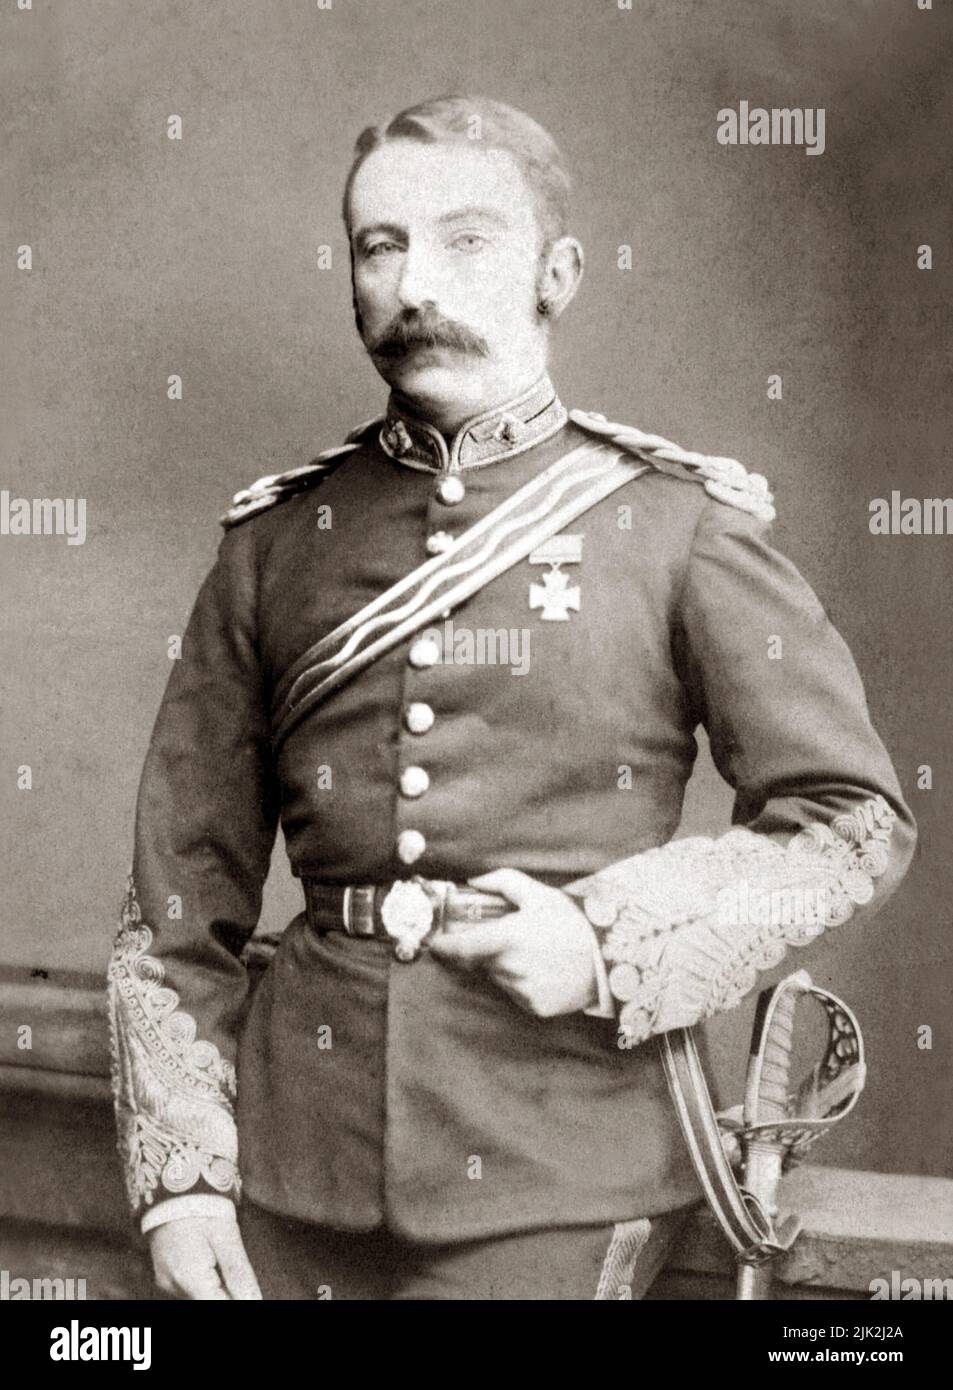 Le lieutenant John Rouse Merriott Chard (1847-1897) qui commandait des troupes stationnées à la dérive de Rorke pendant les guerres anglo-zoulou en janvier 1879, où il remporta un VC. Ici, il est lieutenant-colonel et il est en train d'hurler son VC. Banque D'Images